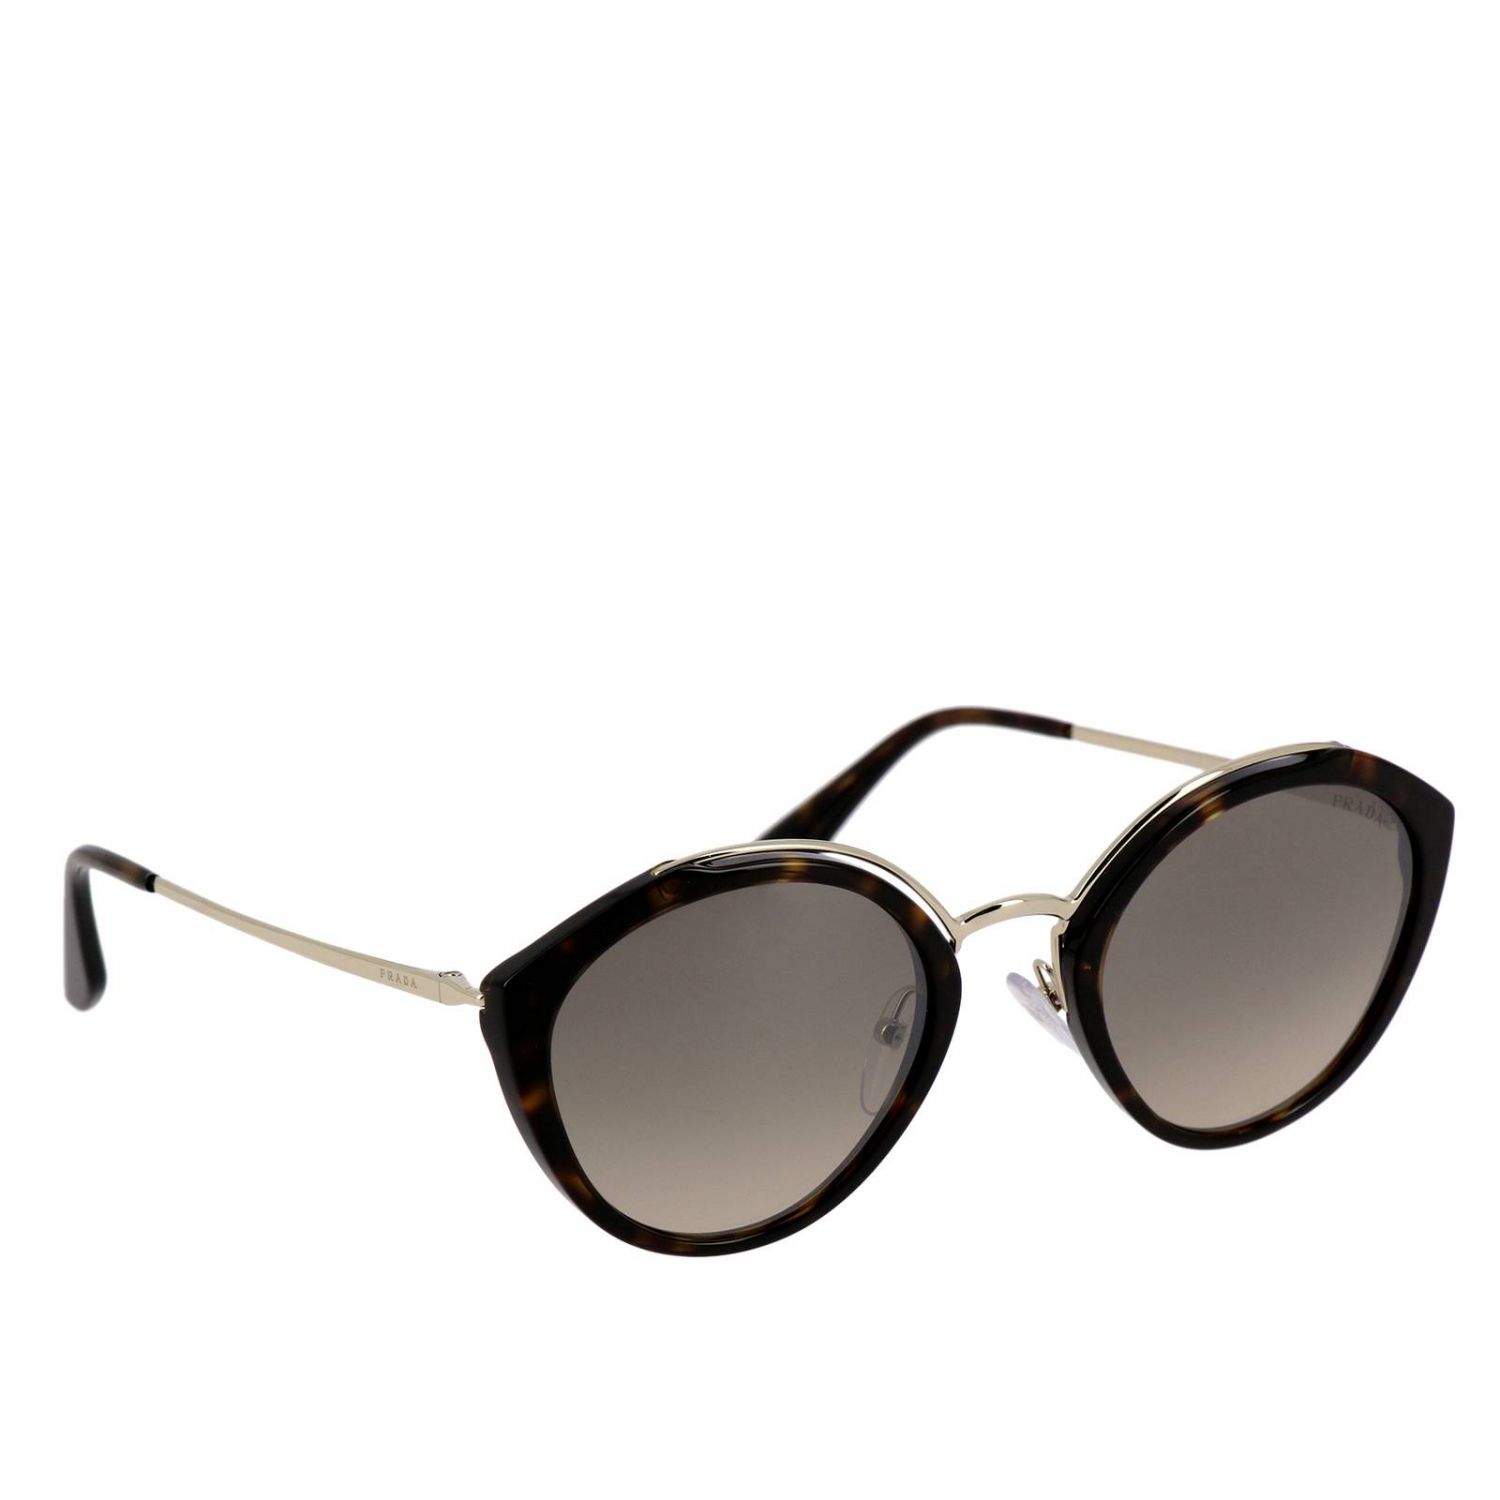 Sunglasses Prada: Prada SPR 18U sunglasses in acetate and metal brown 1